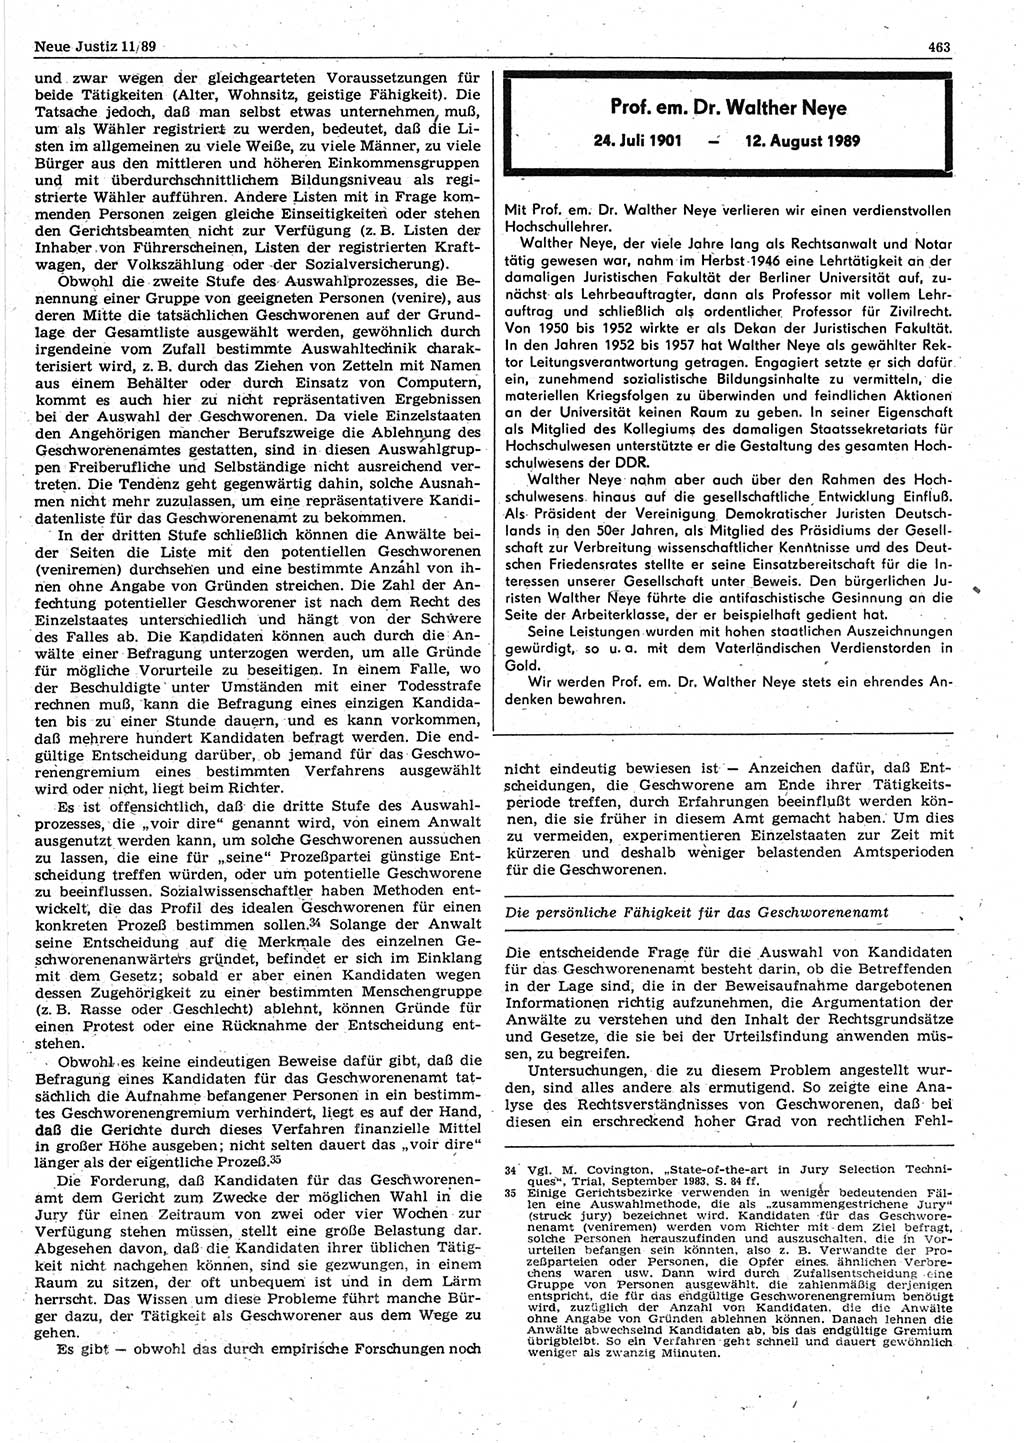 Neue Justiz (NJ), Zeitschrift für sozialistisches Recht und Gesetzlichkeit [Deutsche Demokratische Republik (DDR)], 43. Jahrgang 1989, Seite 463 (NJ DDR 1989, S. 463)